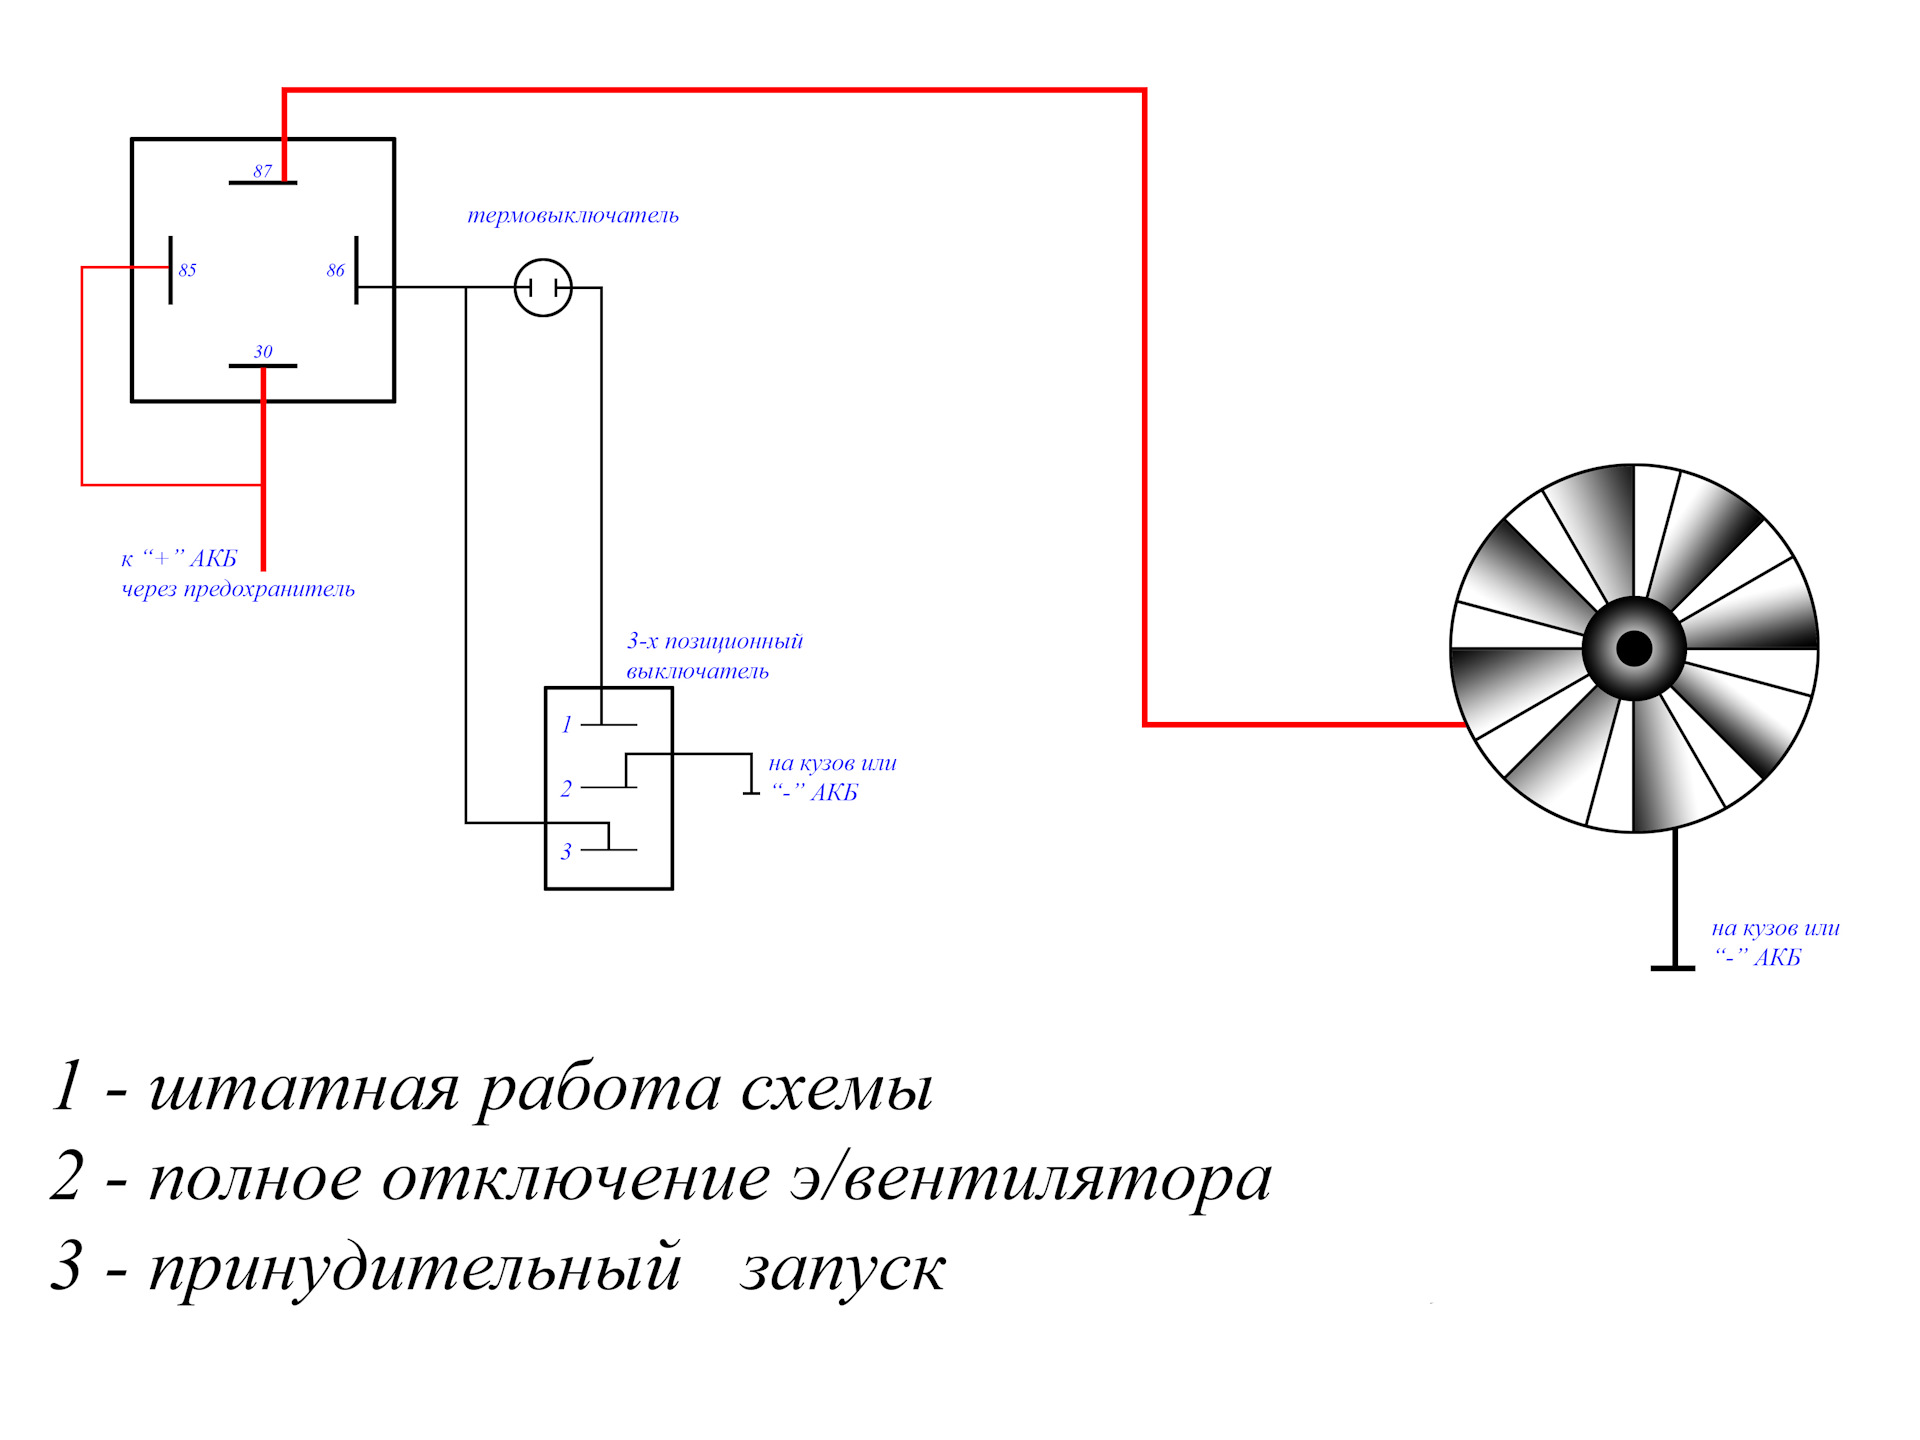 Вентилятор через реле на ваз. Схема подключения датчика включения вентилятора автомобиля. Схема включения вентилятора охлаждения 2107 карбюратор. Схема включения электровентиляторов. Схема подключения принудительного электровентилятора через реле.